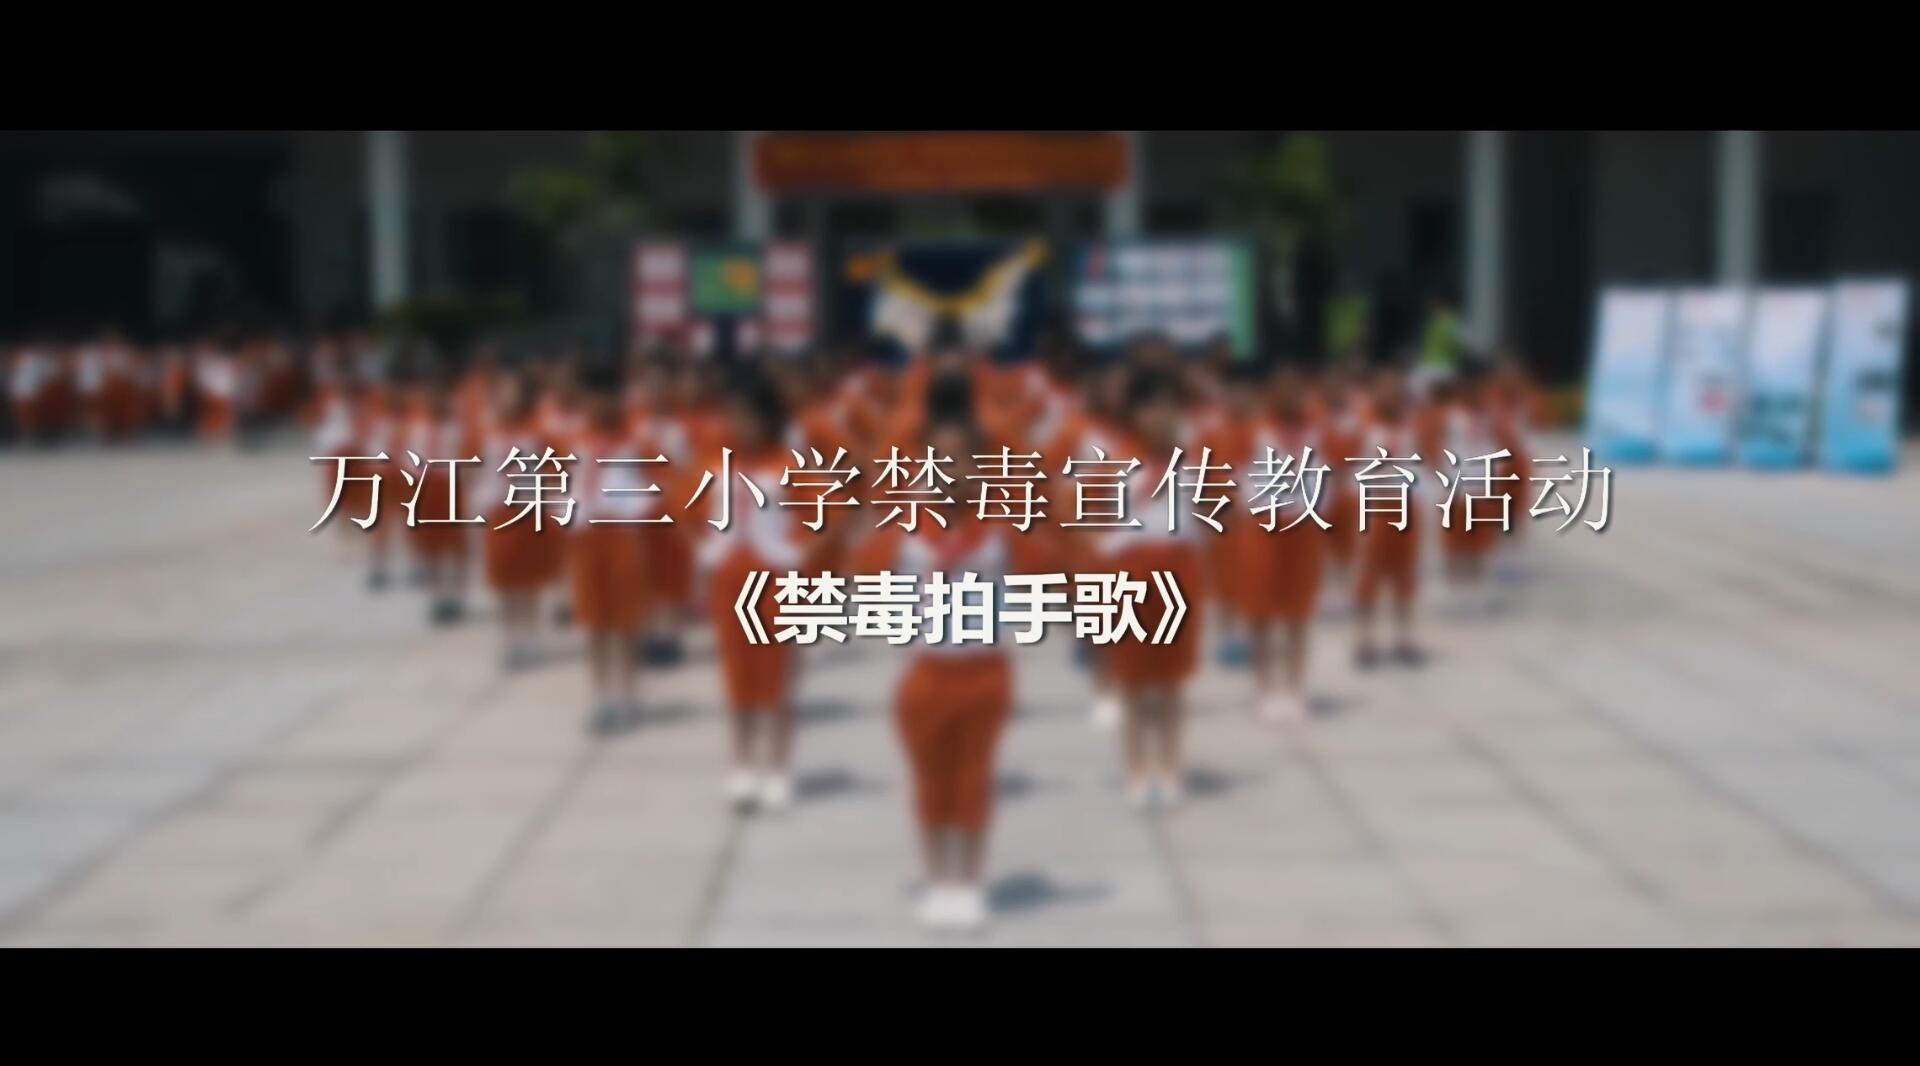 万江第三小学禁毒宣传教育活动《禁毒拍手歌》